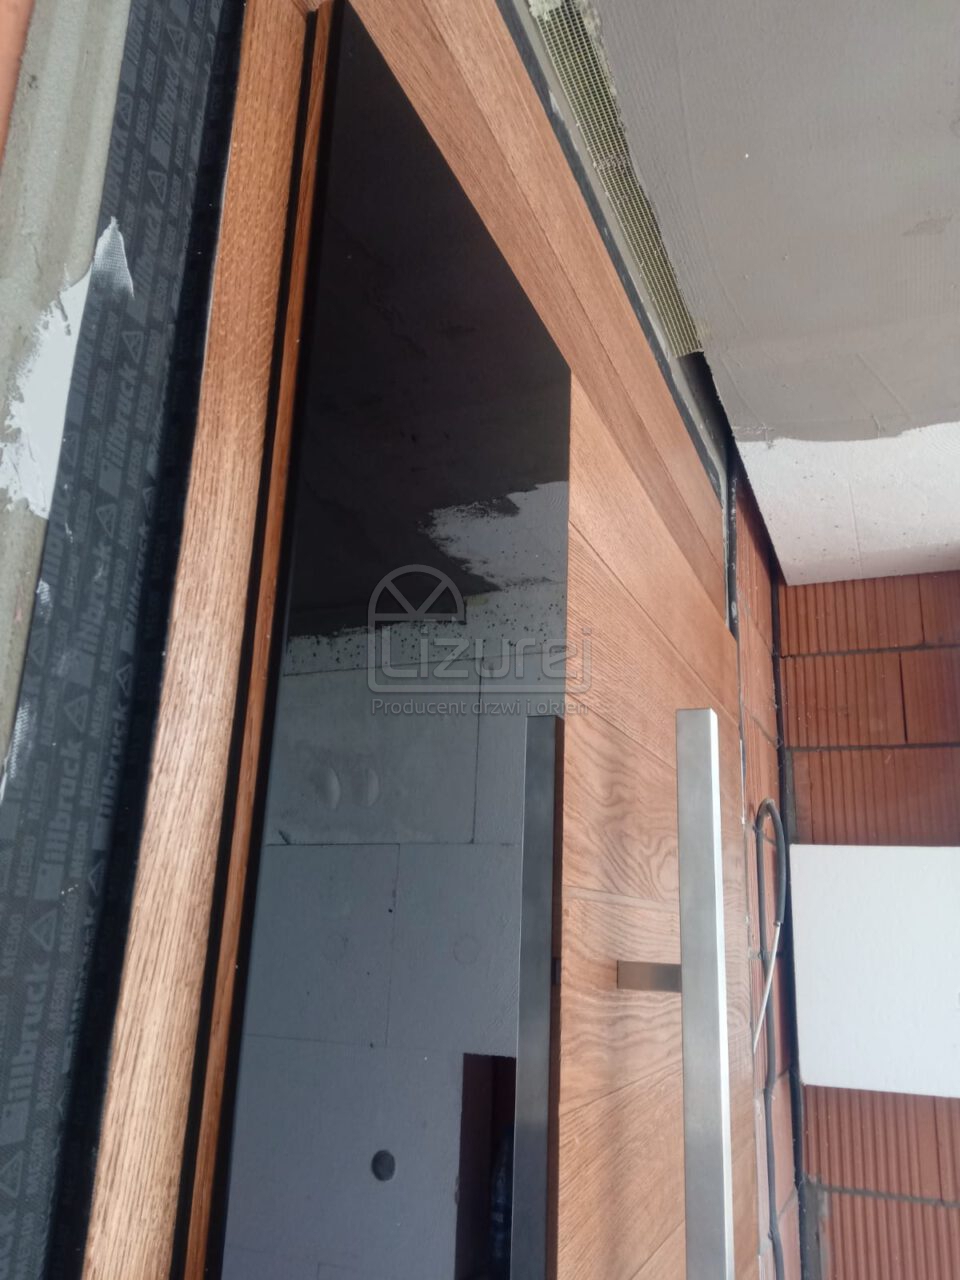 Producent Drzwi Drewnianych Na Wymiar Lizurej Galeria Zewnętrzne 126